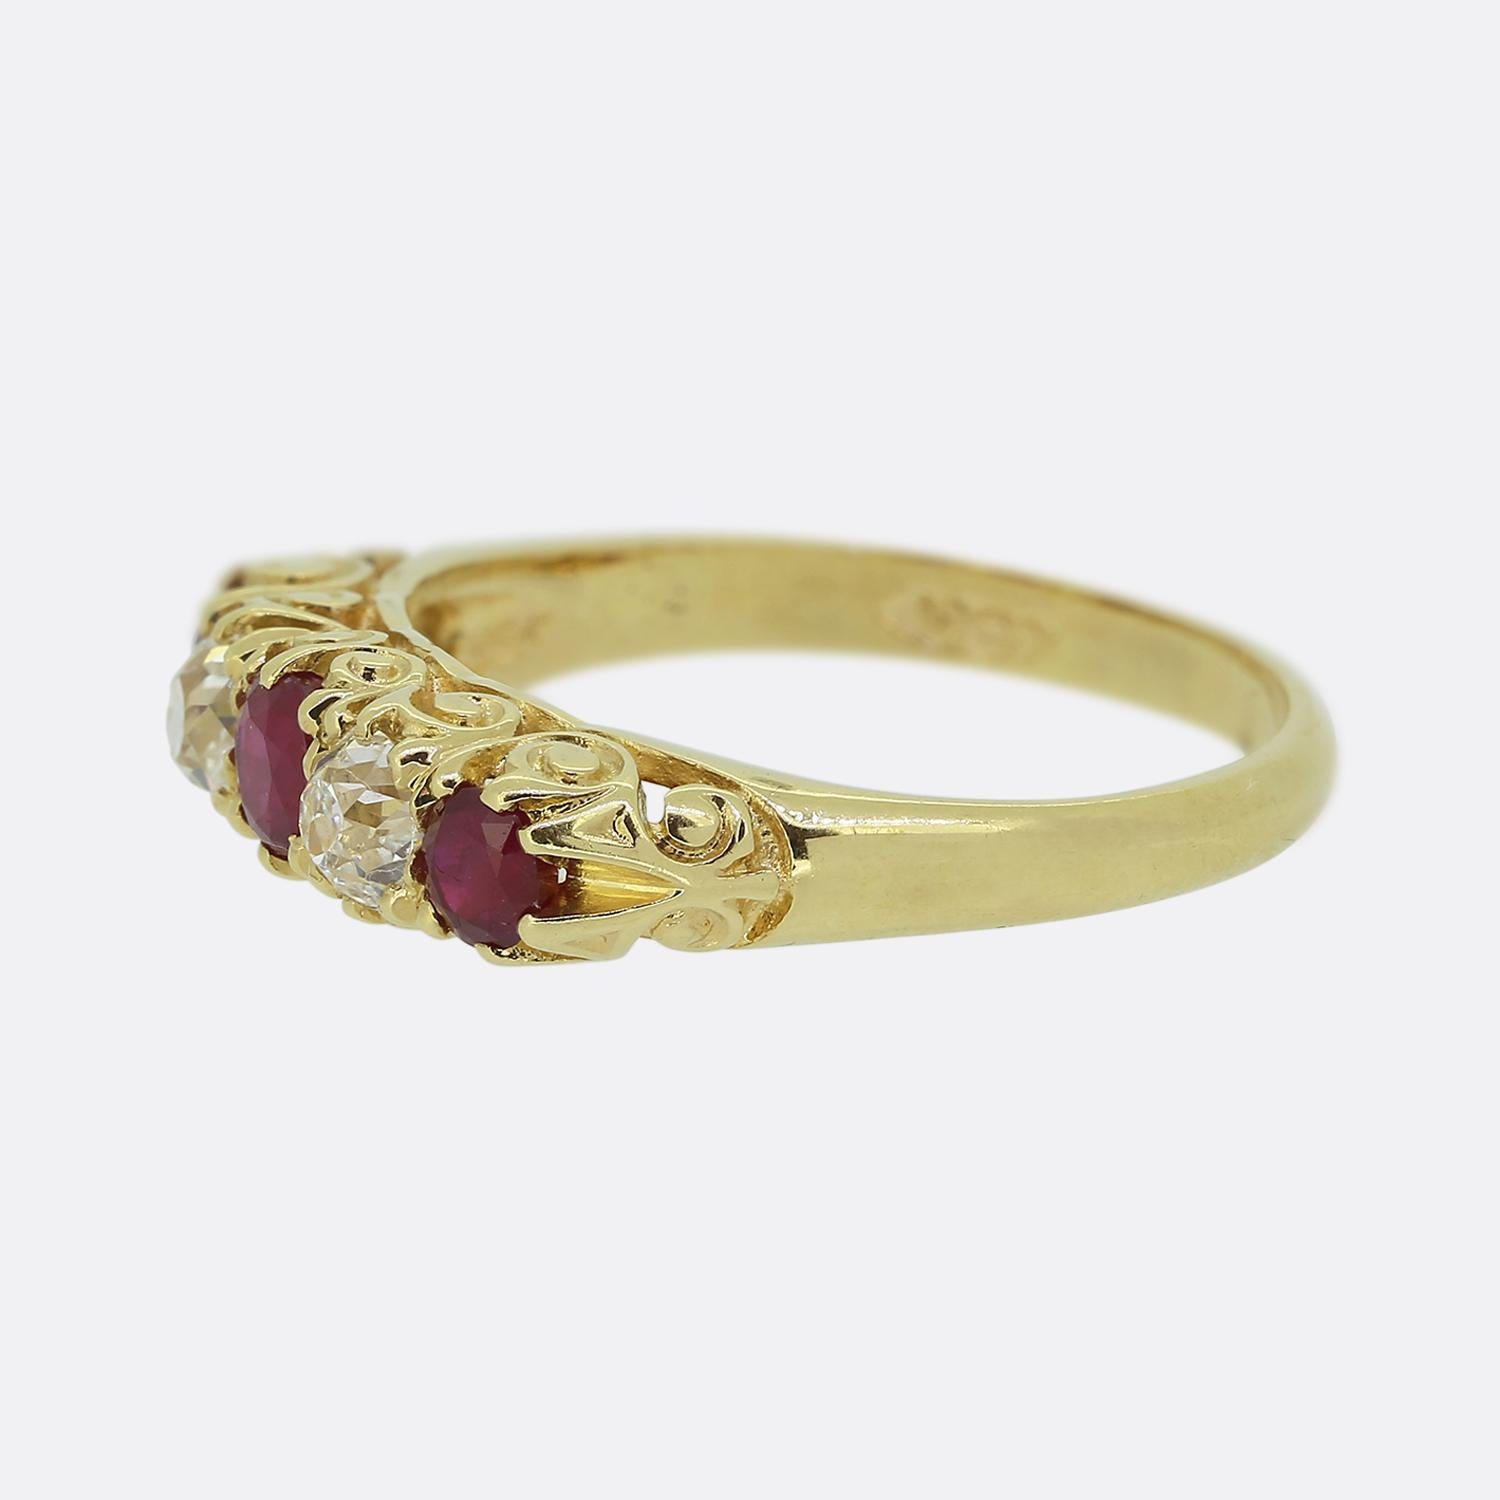 Hier haben wir einen Fünf-Stein-Ring im klassischen Stil aus der viktorianischen Zeit. Dieses antike Stück wurde aus reichhaltigem 18-karätigem Gelbgold gefertigt und zeigt ein Trio aus runden, facettierten, roten Rubinen in einer einzigen Linie